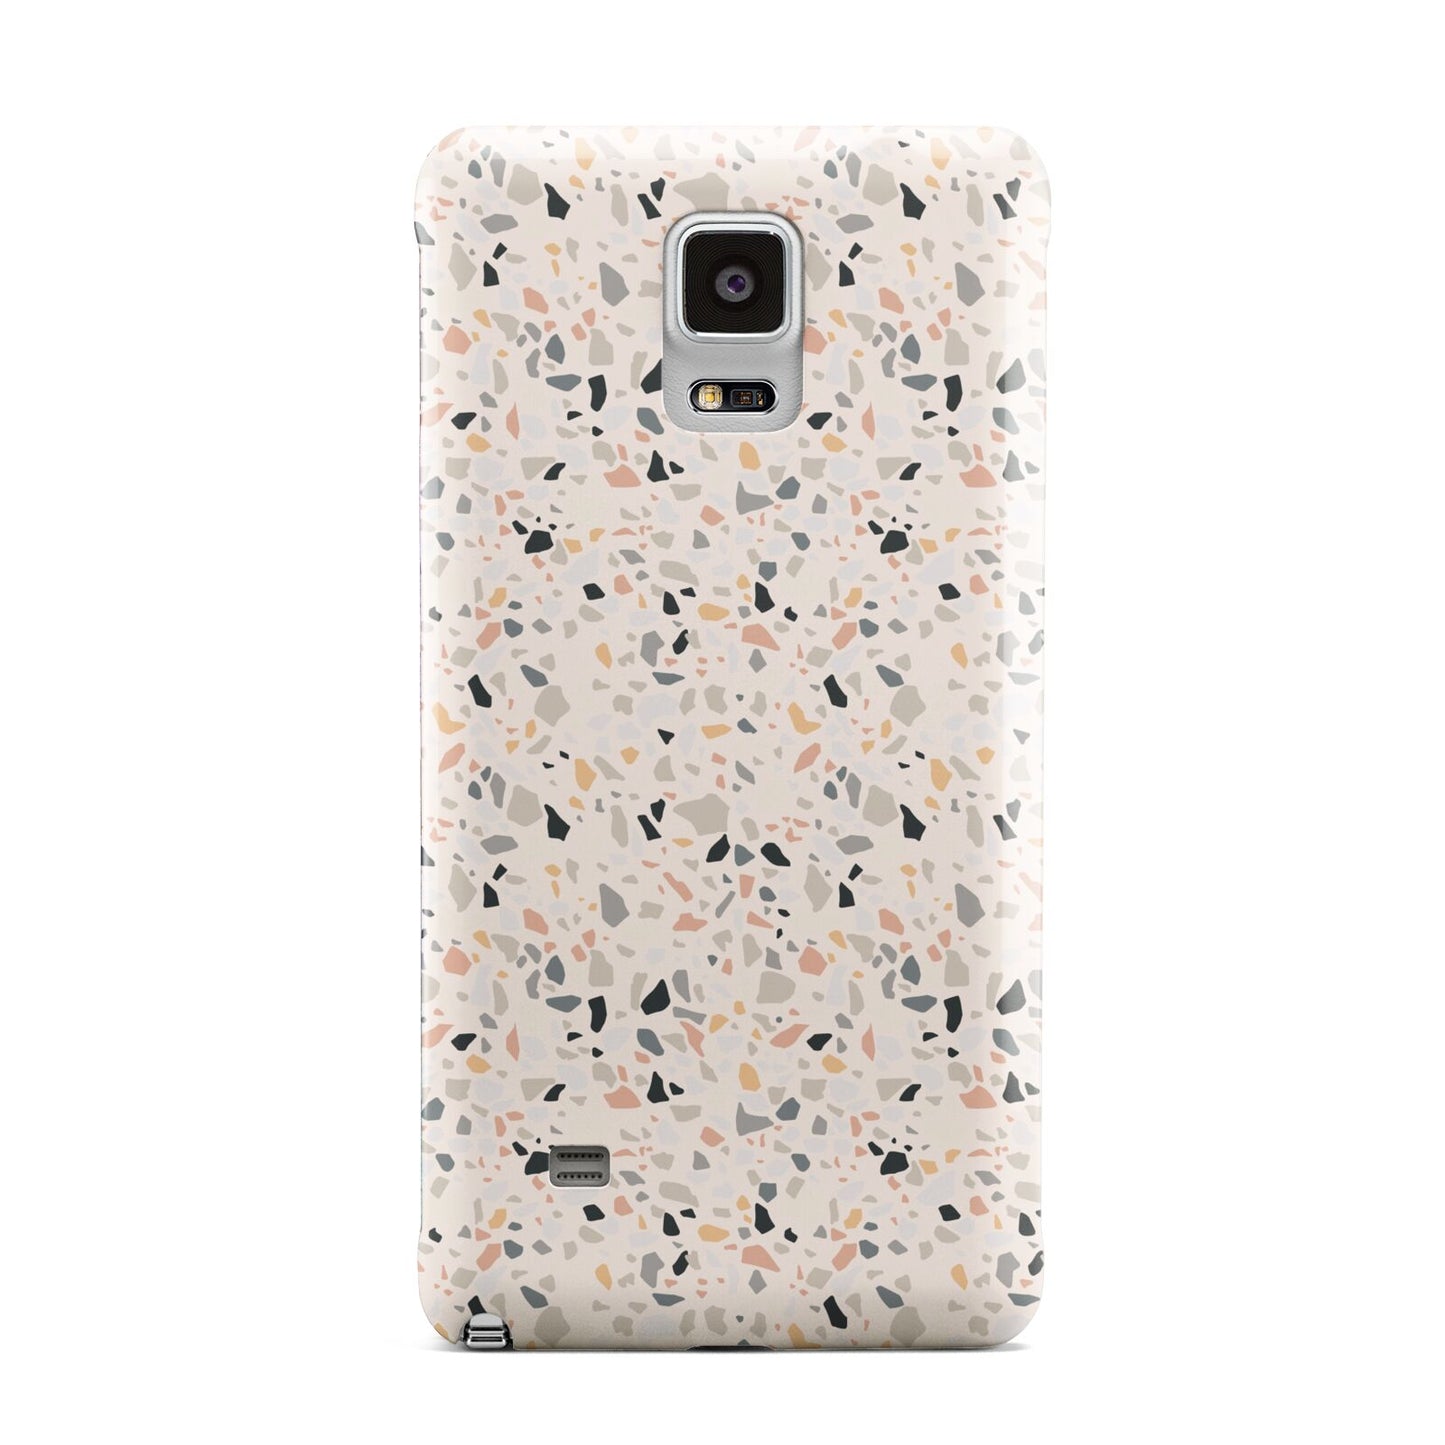 Terrazzo Stone Samsung Galaxy Note 4 Case